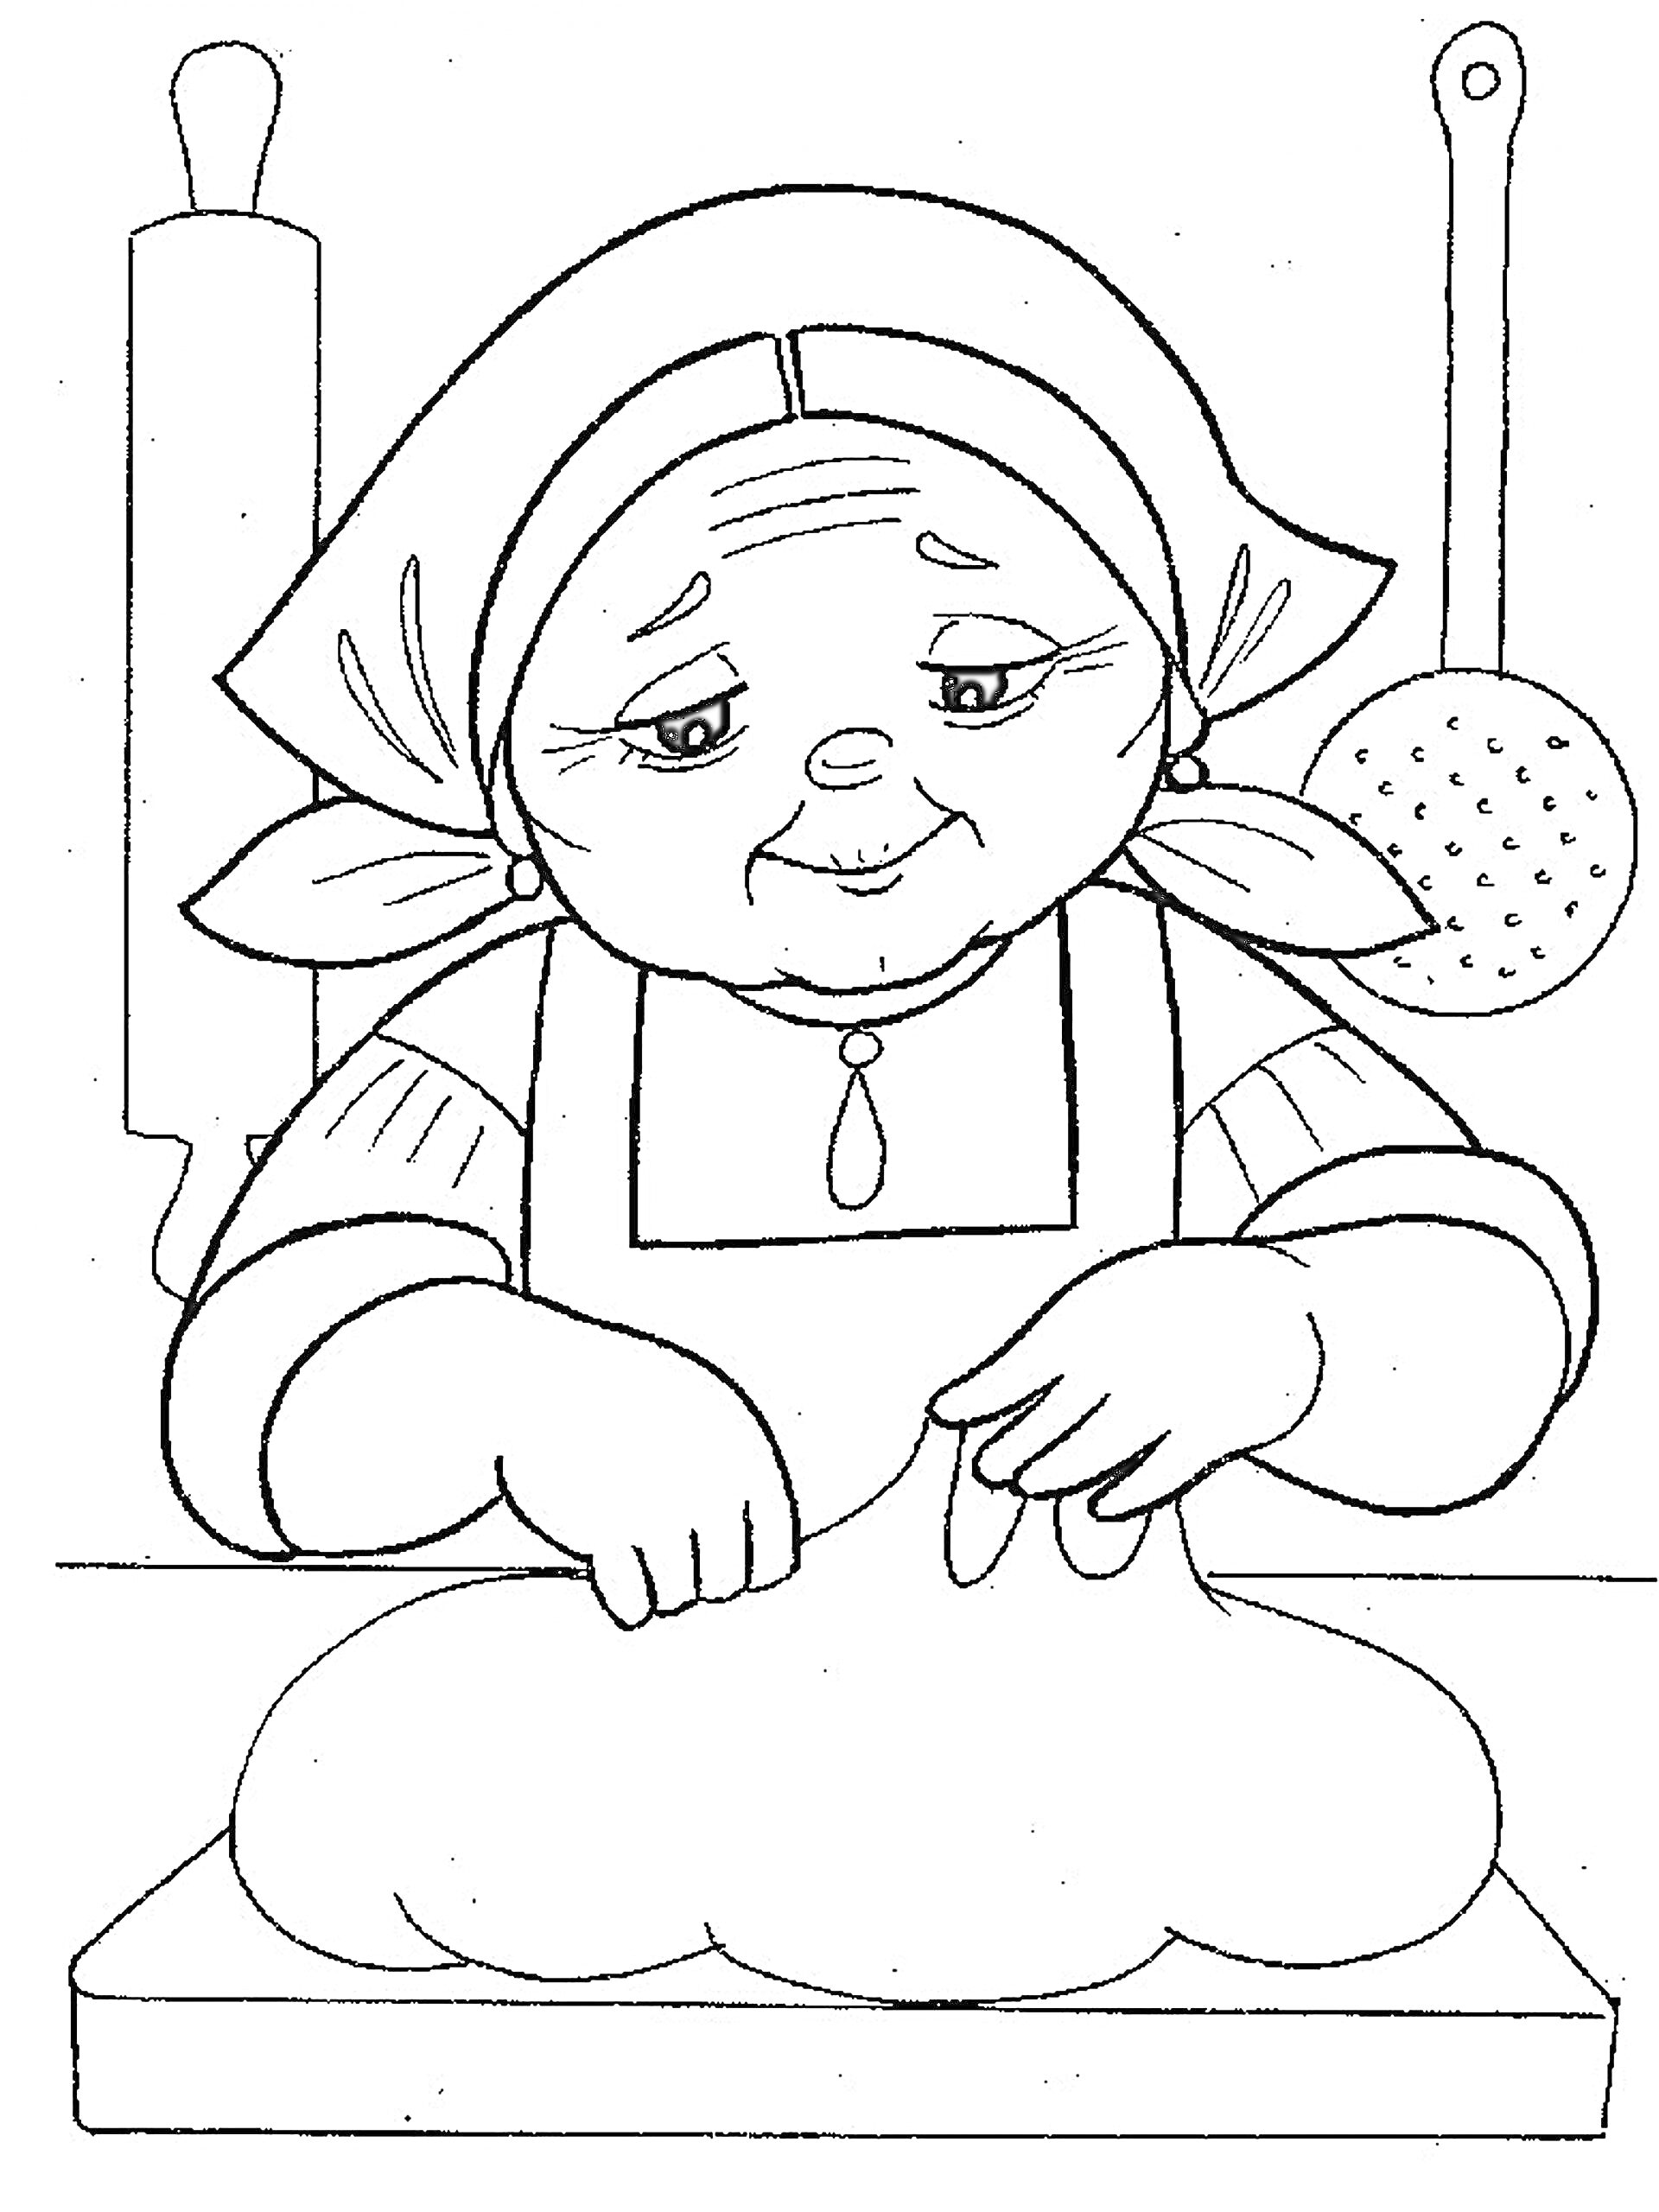 Раскраска Бабушка готовит тесто на кухне, скалка и шумовка на заднем плане